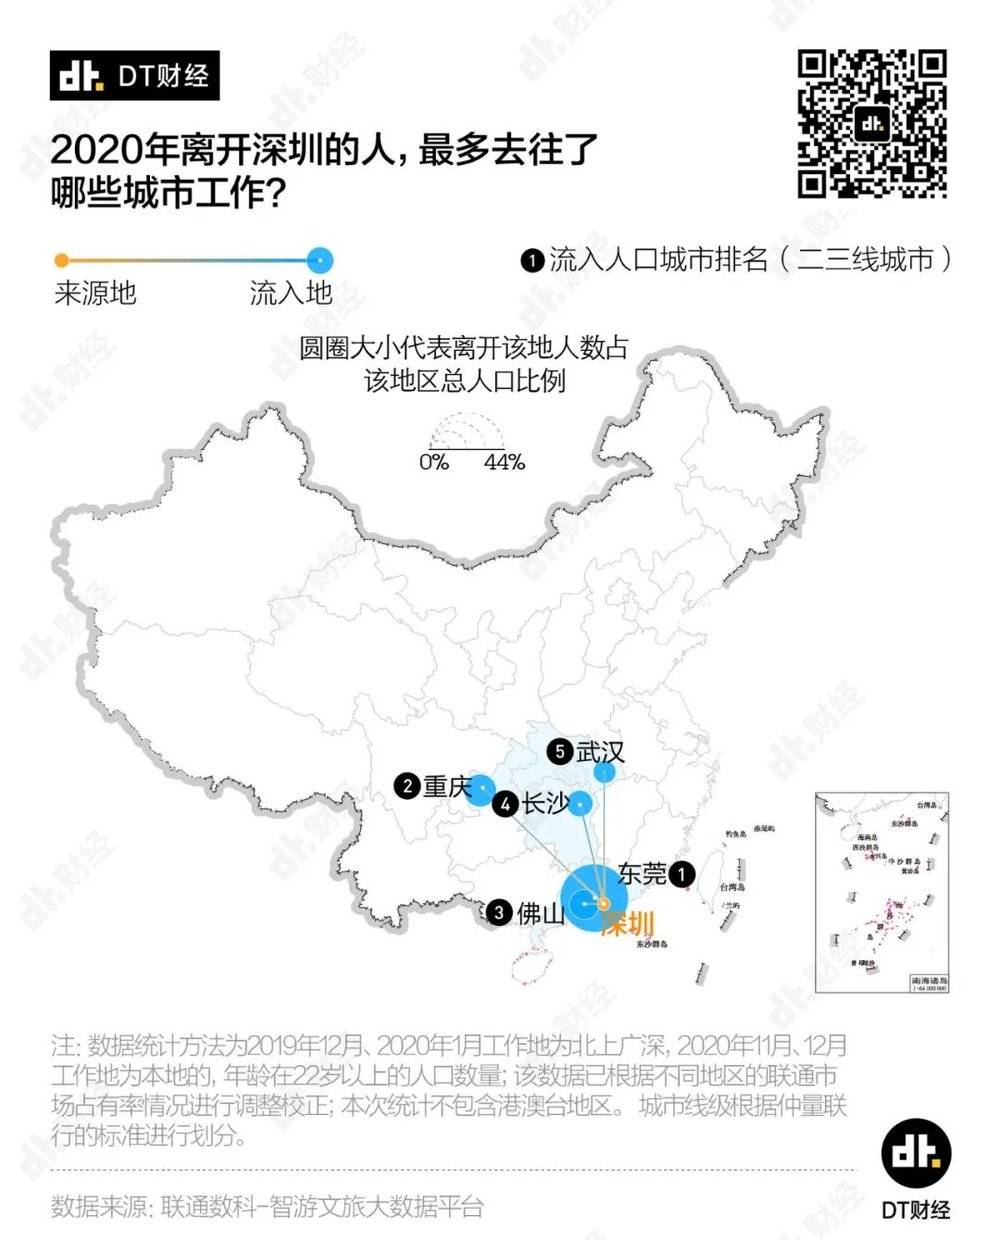 接收上海、广州、深圳人口的城市